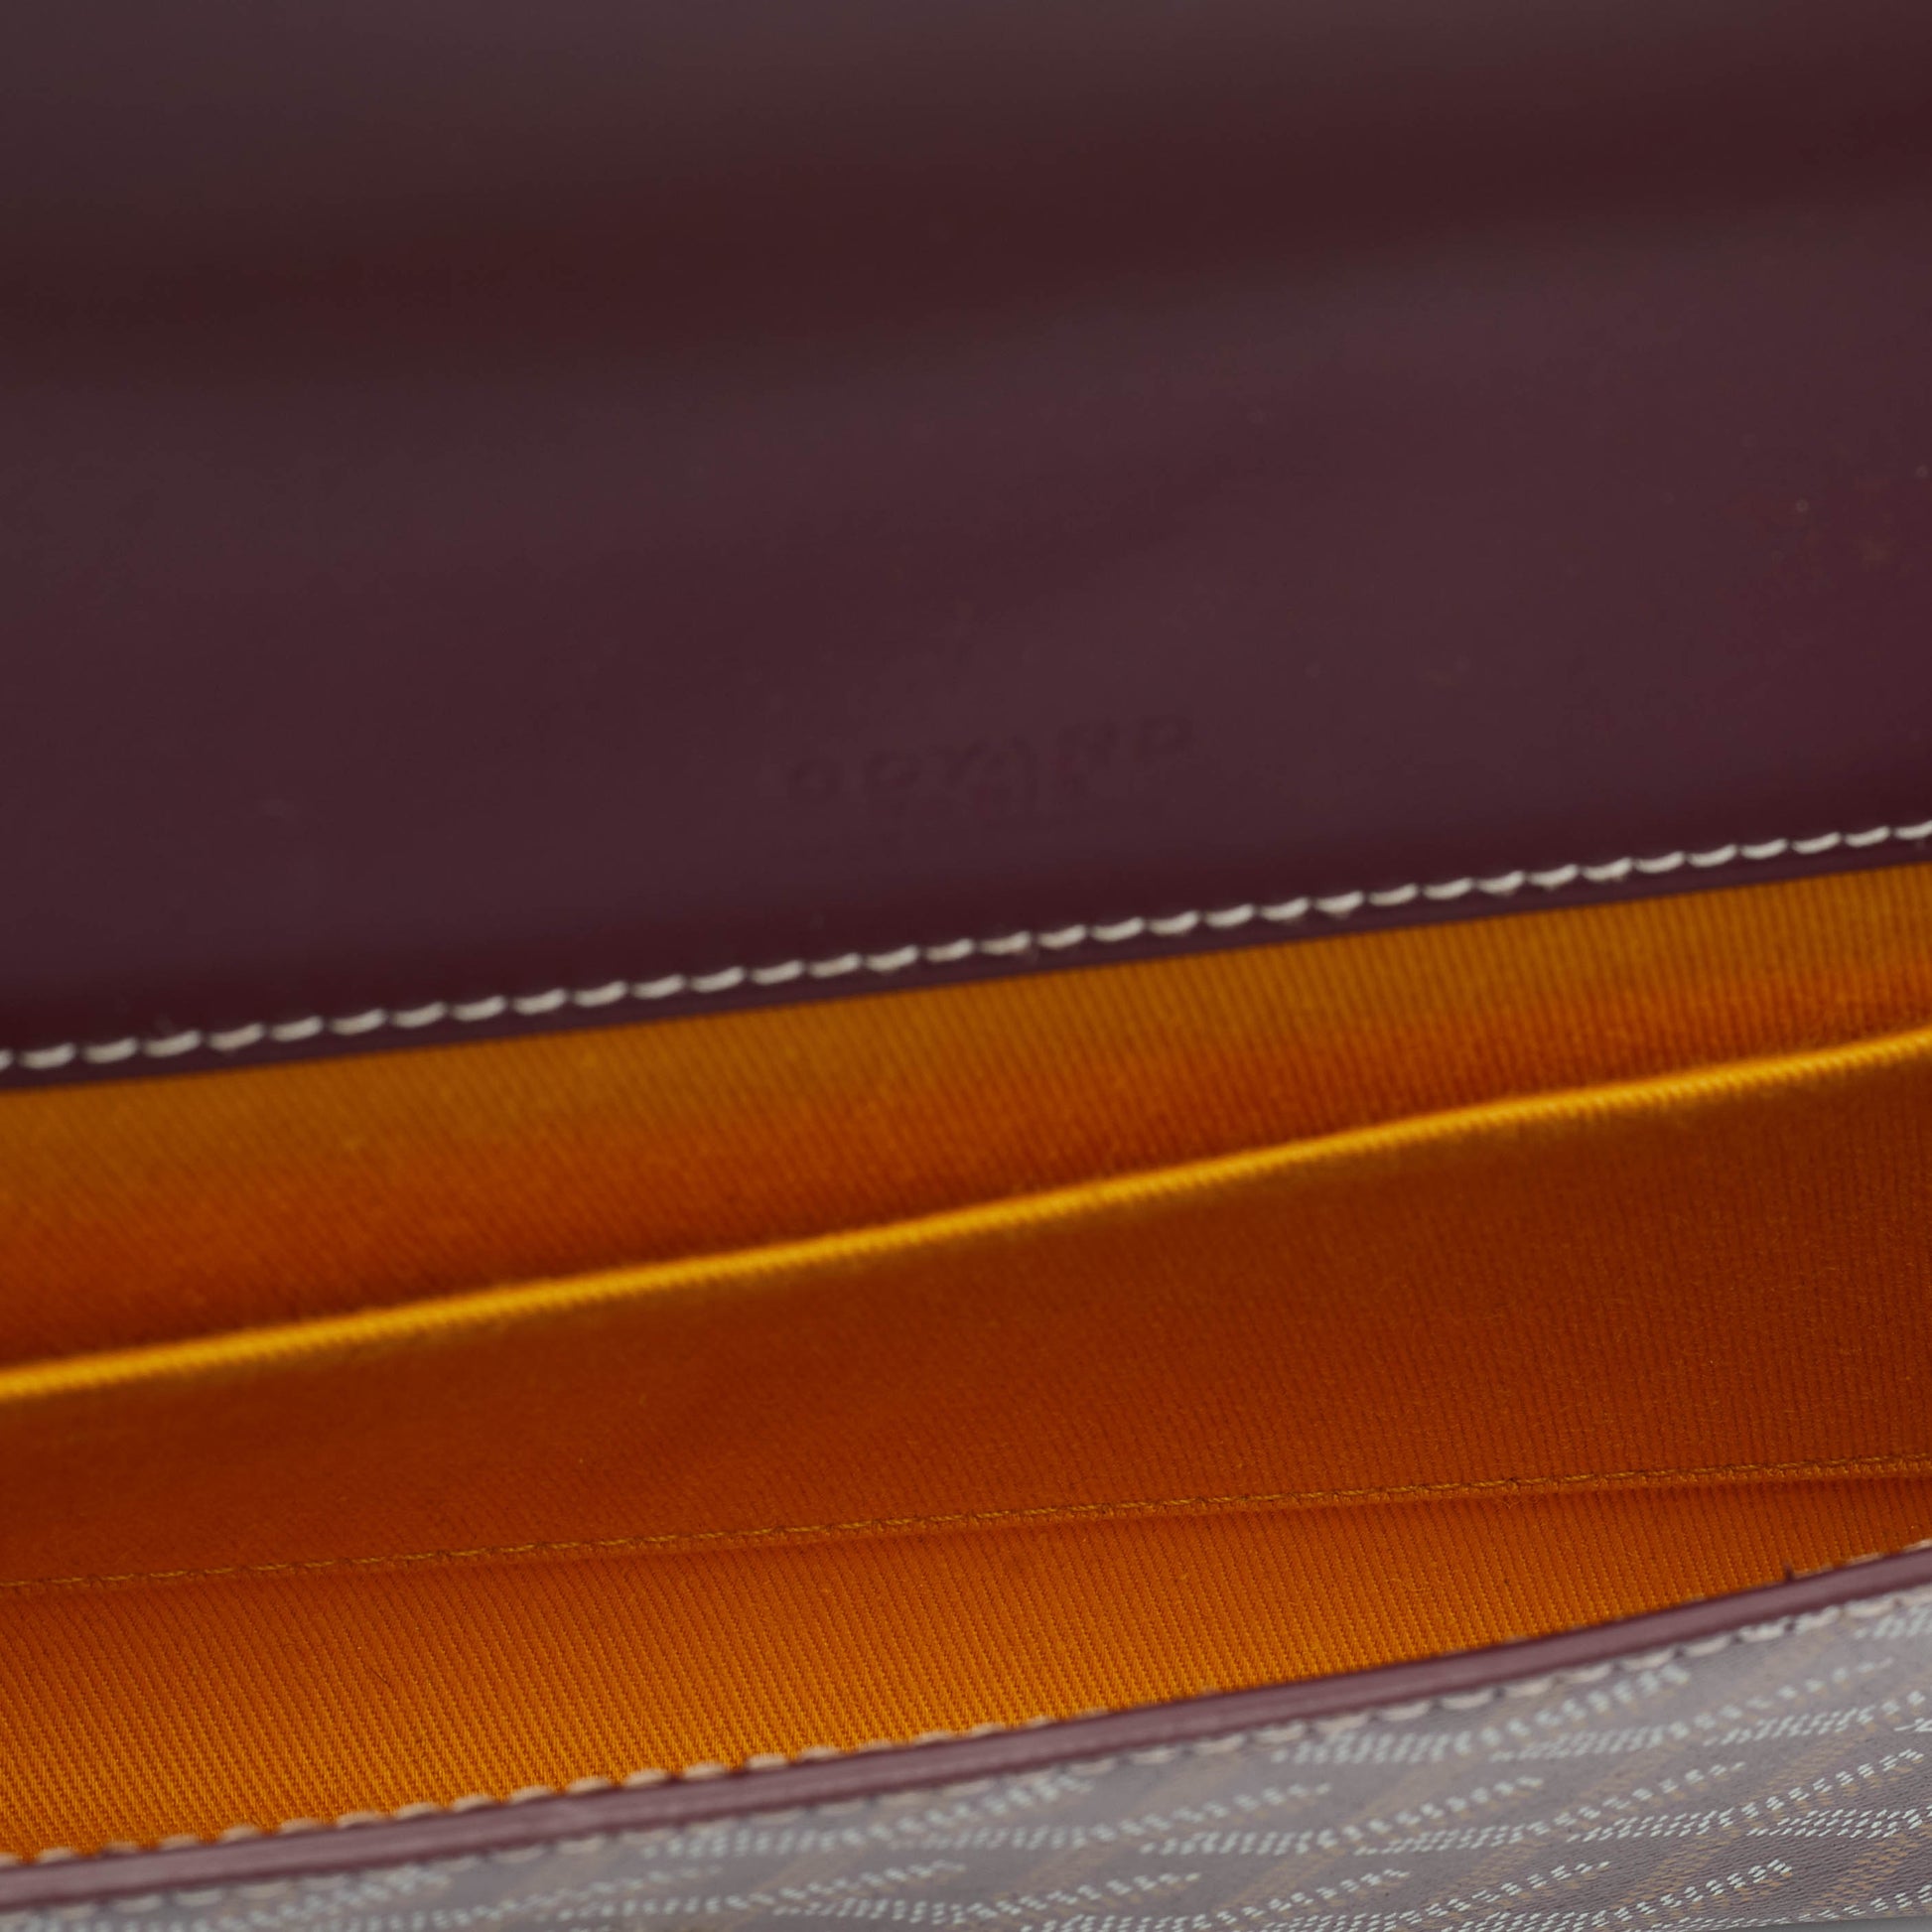 Leather bag Goyard Burgundy in Leather - 34559117